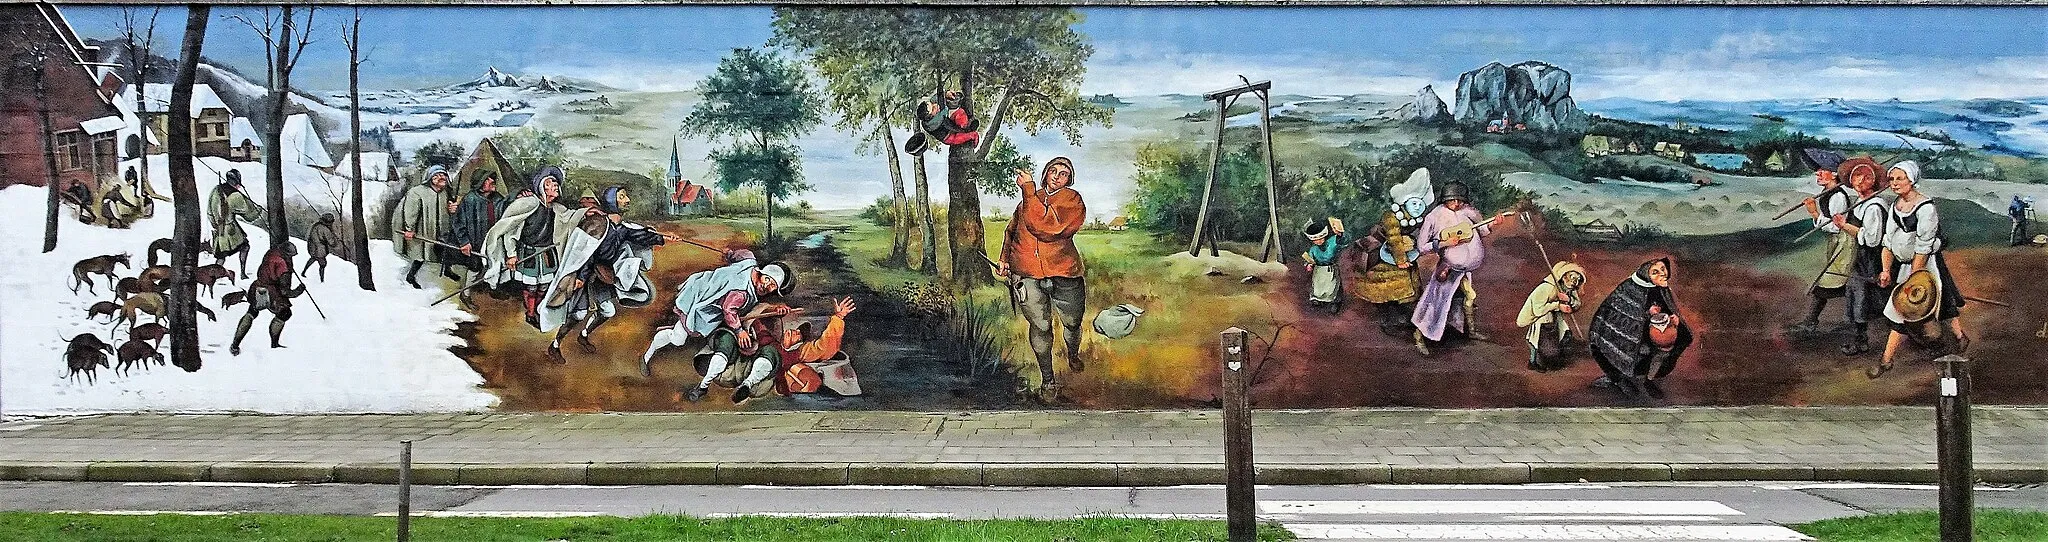 Photo showing: Fresque des œuvres de Pieter Brueghel l'Ancien face à l'église Saint Nicolas de Rekkem.- Successivement sont représentés: « Les chasseurs dans la neige », « la parabole des aveugles », « le proverbe du dénicheur », « la pie sur le gibet », et « Le combat de Carnaval et de Carême (les joueurs de vihuela) » et « La fenaison ».- Flandre Occidentale - Belgique